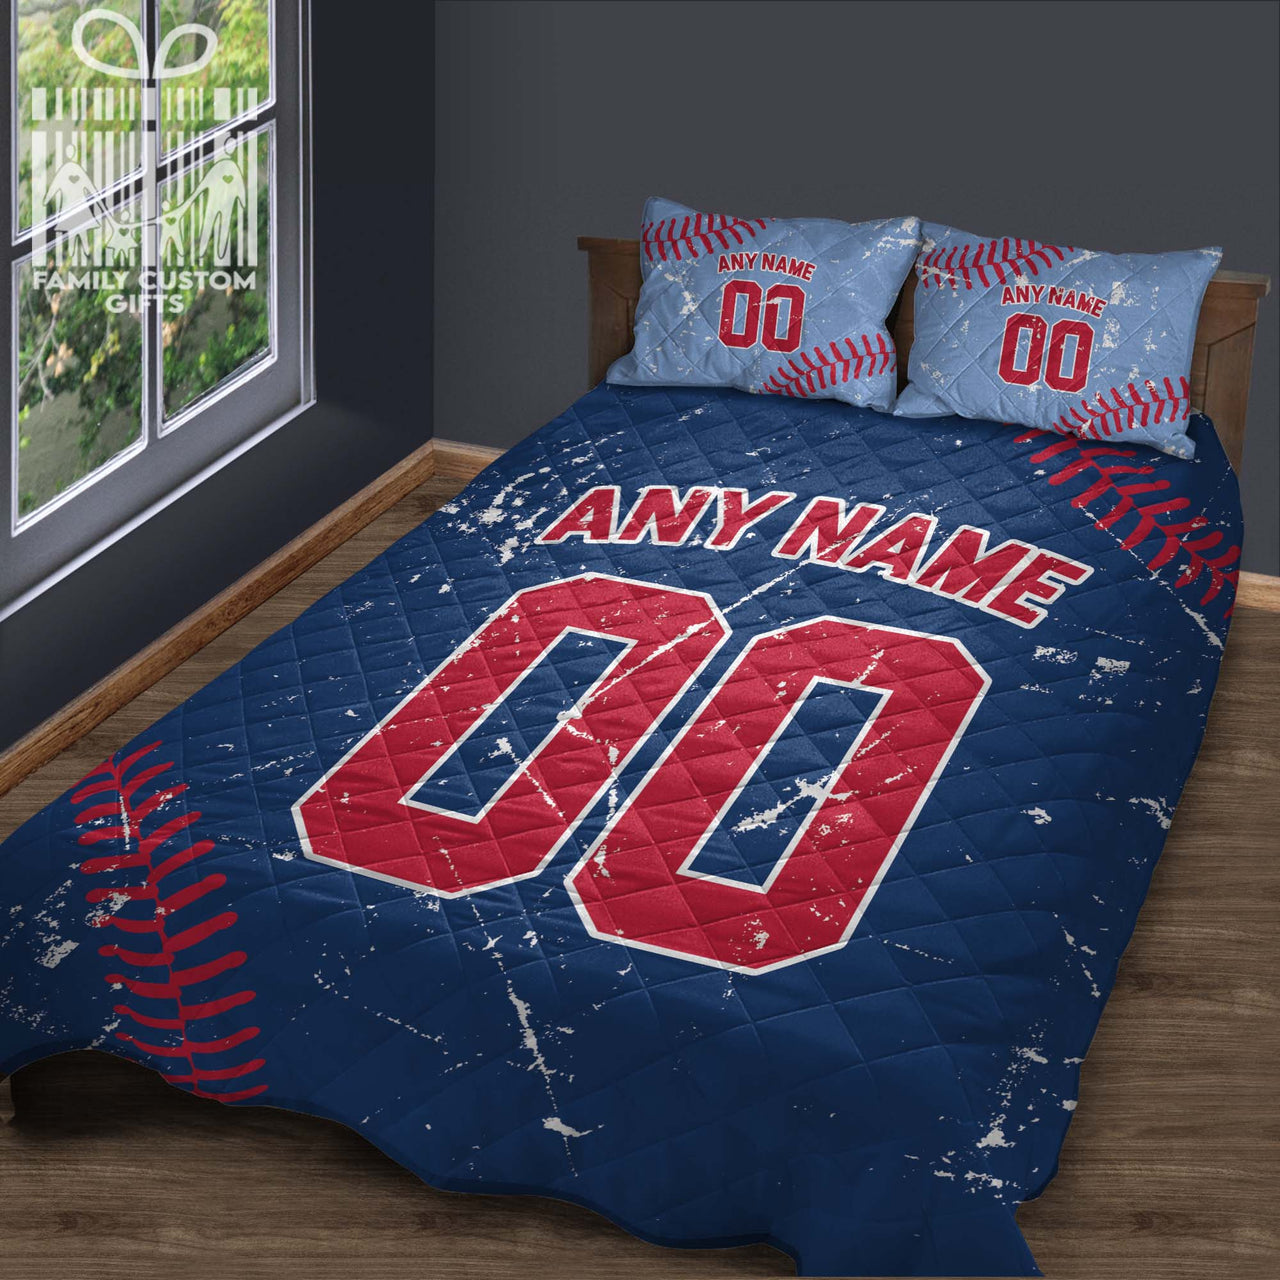 Custom Quilt Sets Philadelphia Jersey Personalized Baseball Premium Quilt Bedding for Men Women